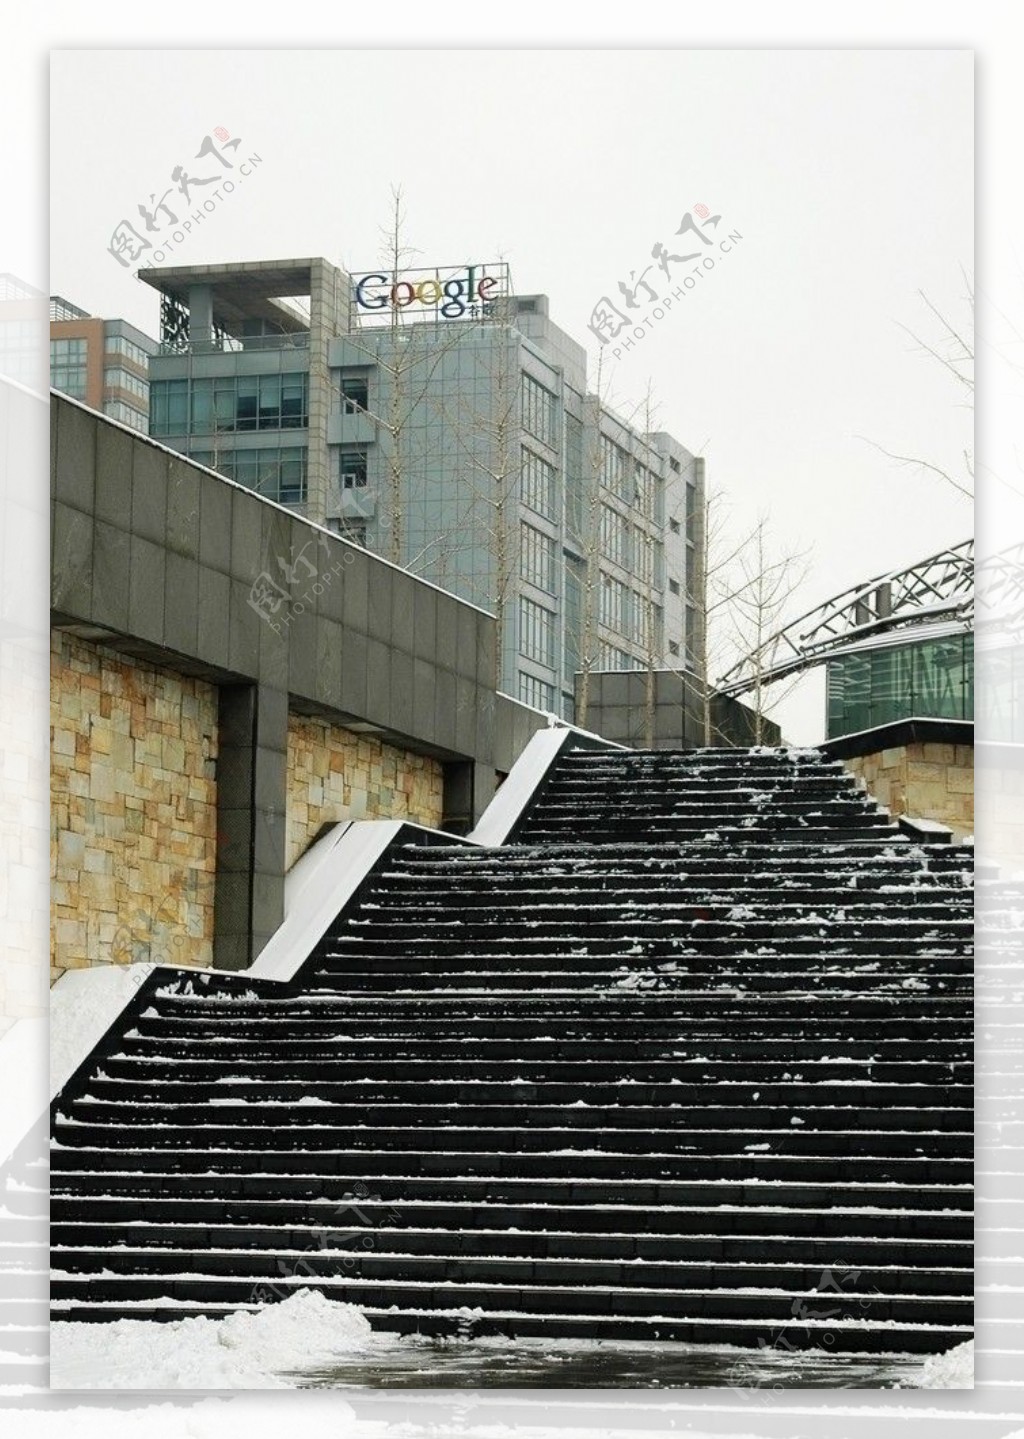 雪后google中国办公大楼图片